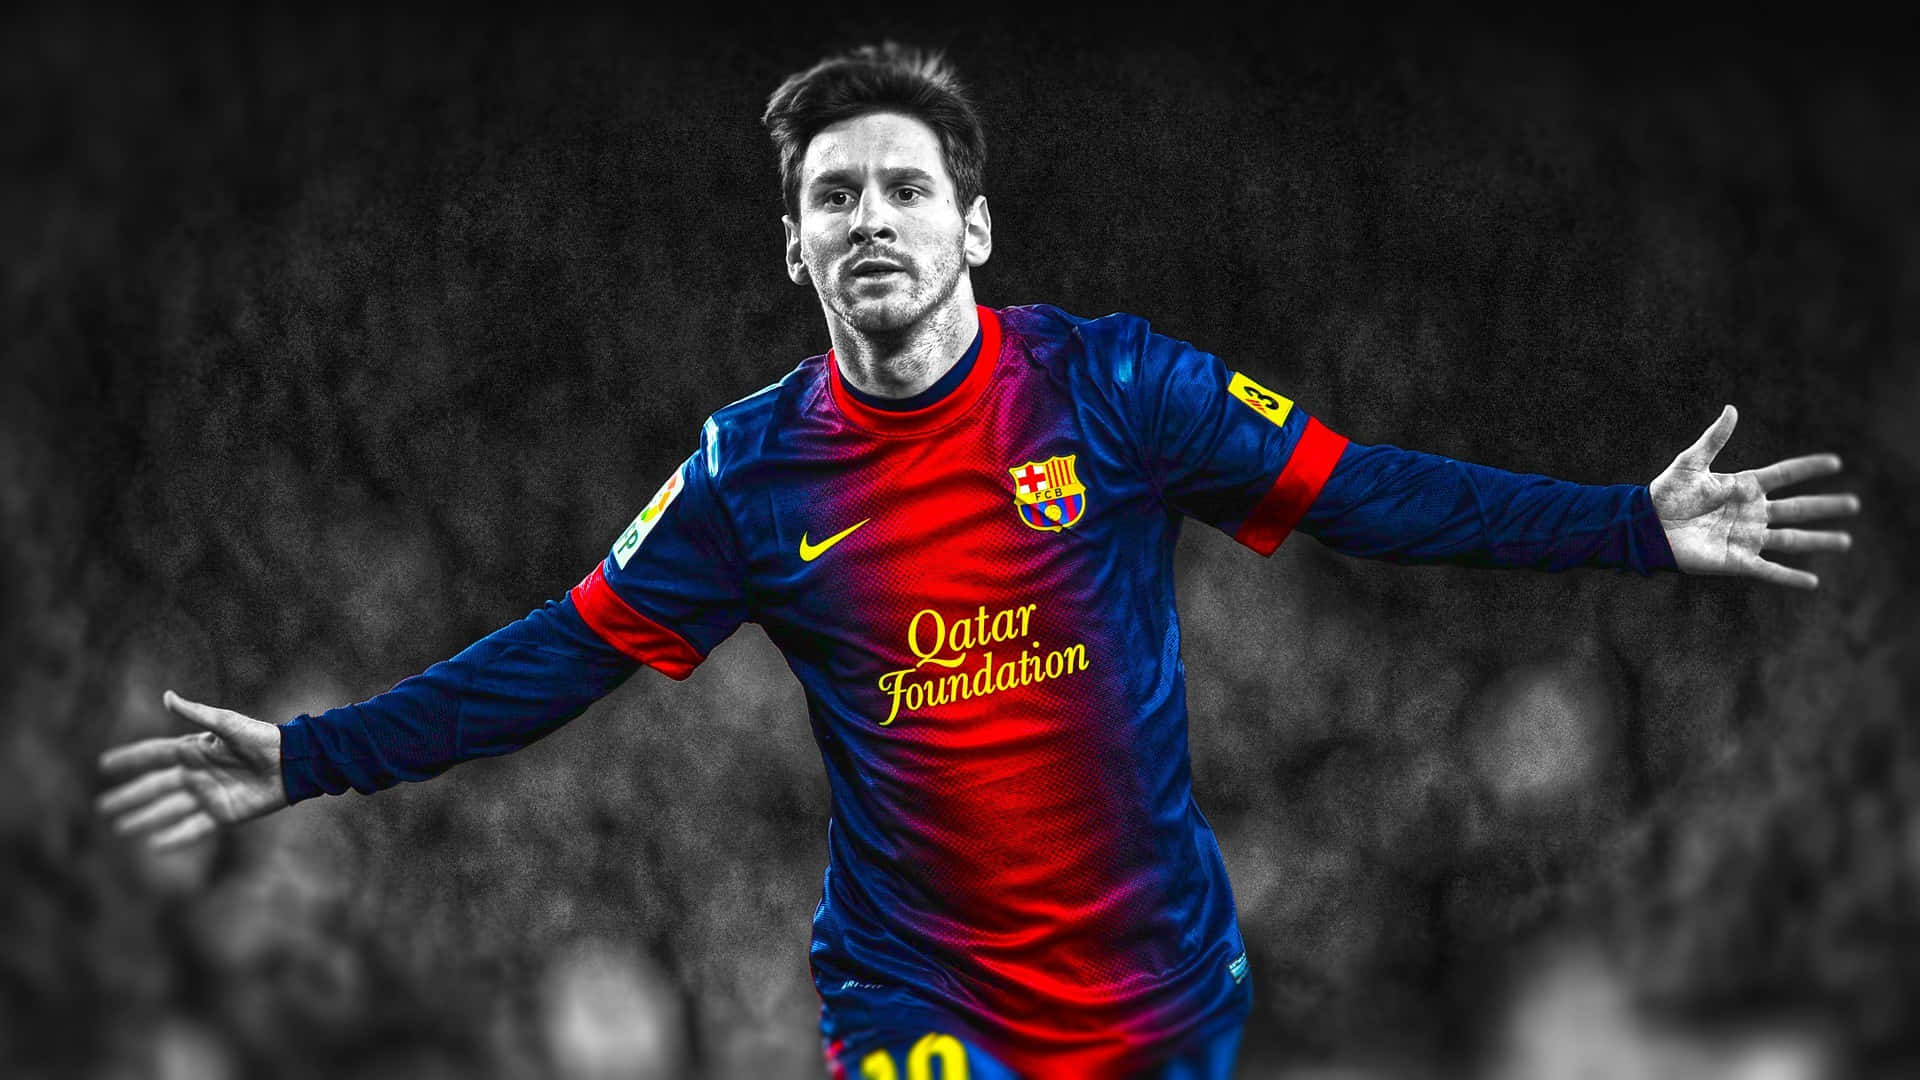 Imagendel Futbolista Lionel Messi